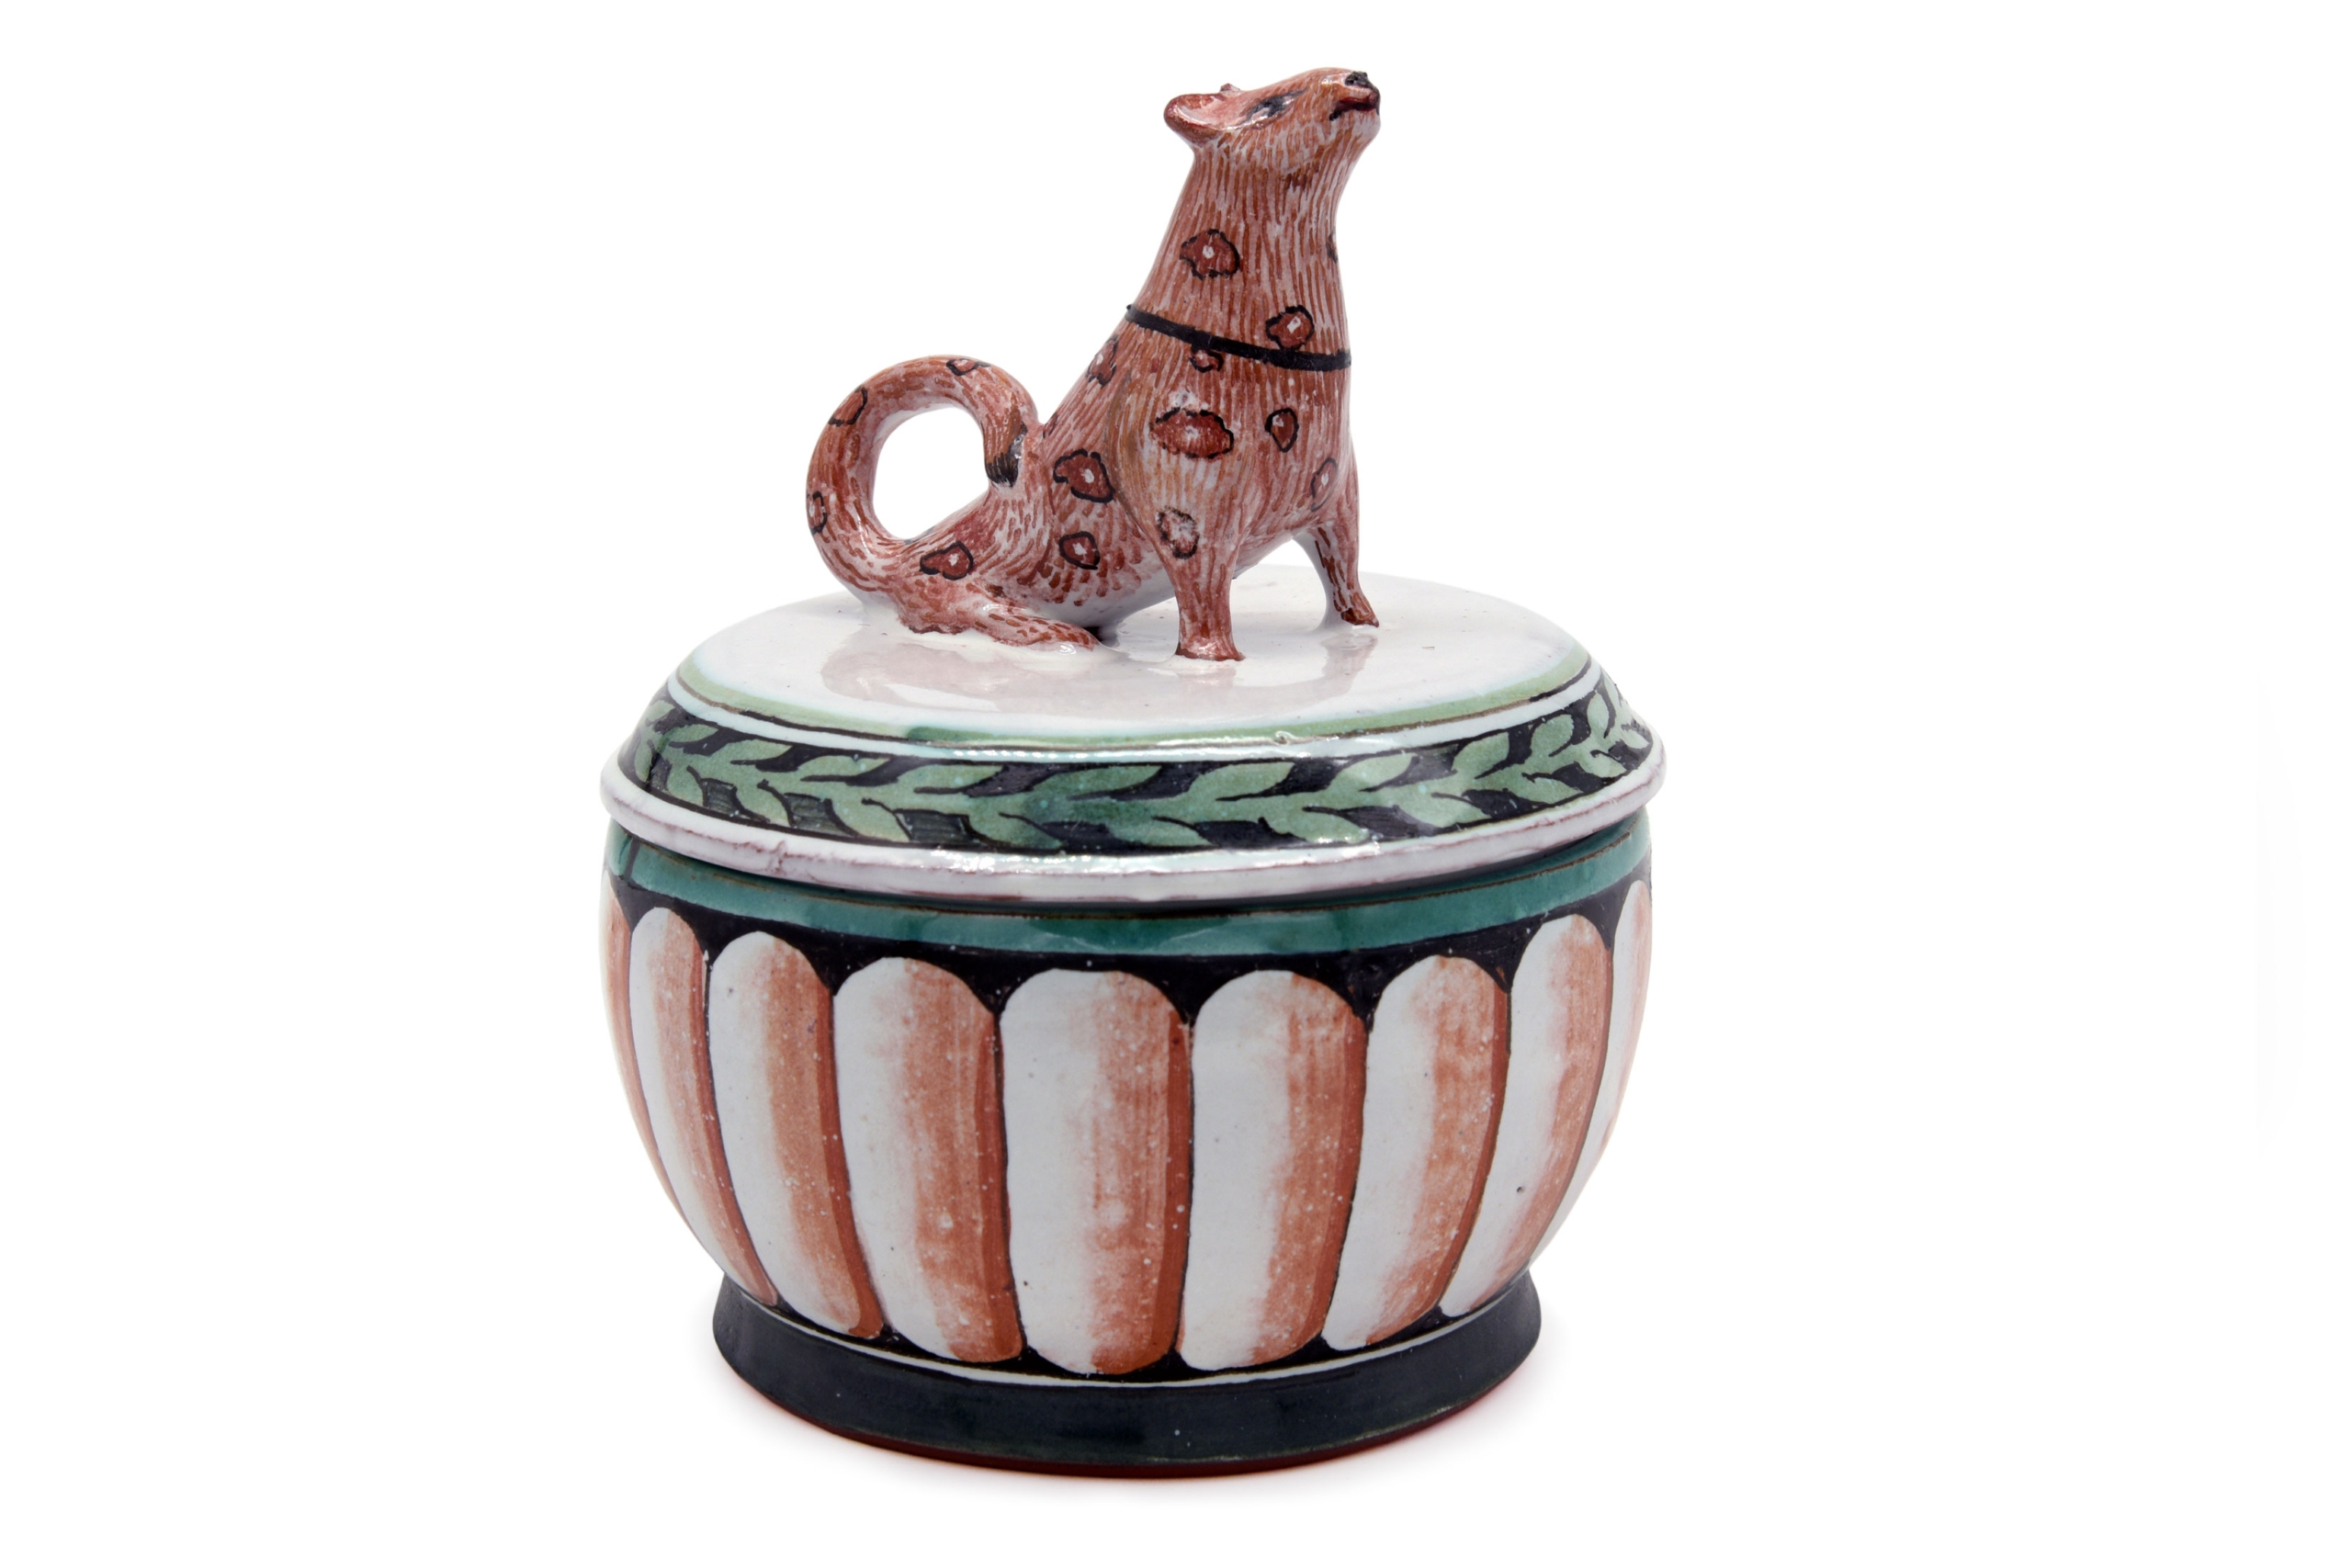 Sigrid Hipert-Artes-Dose mit Hund-galerie metzger gallery ceramic art object kunst